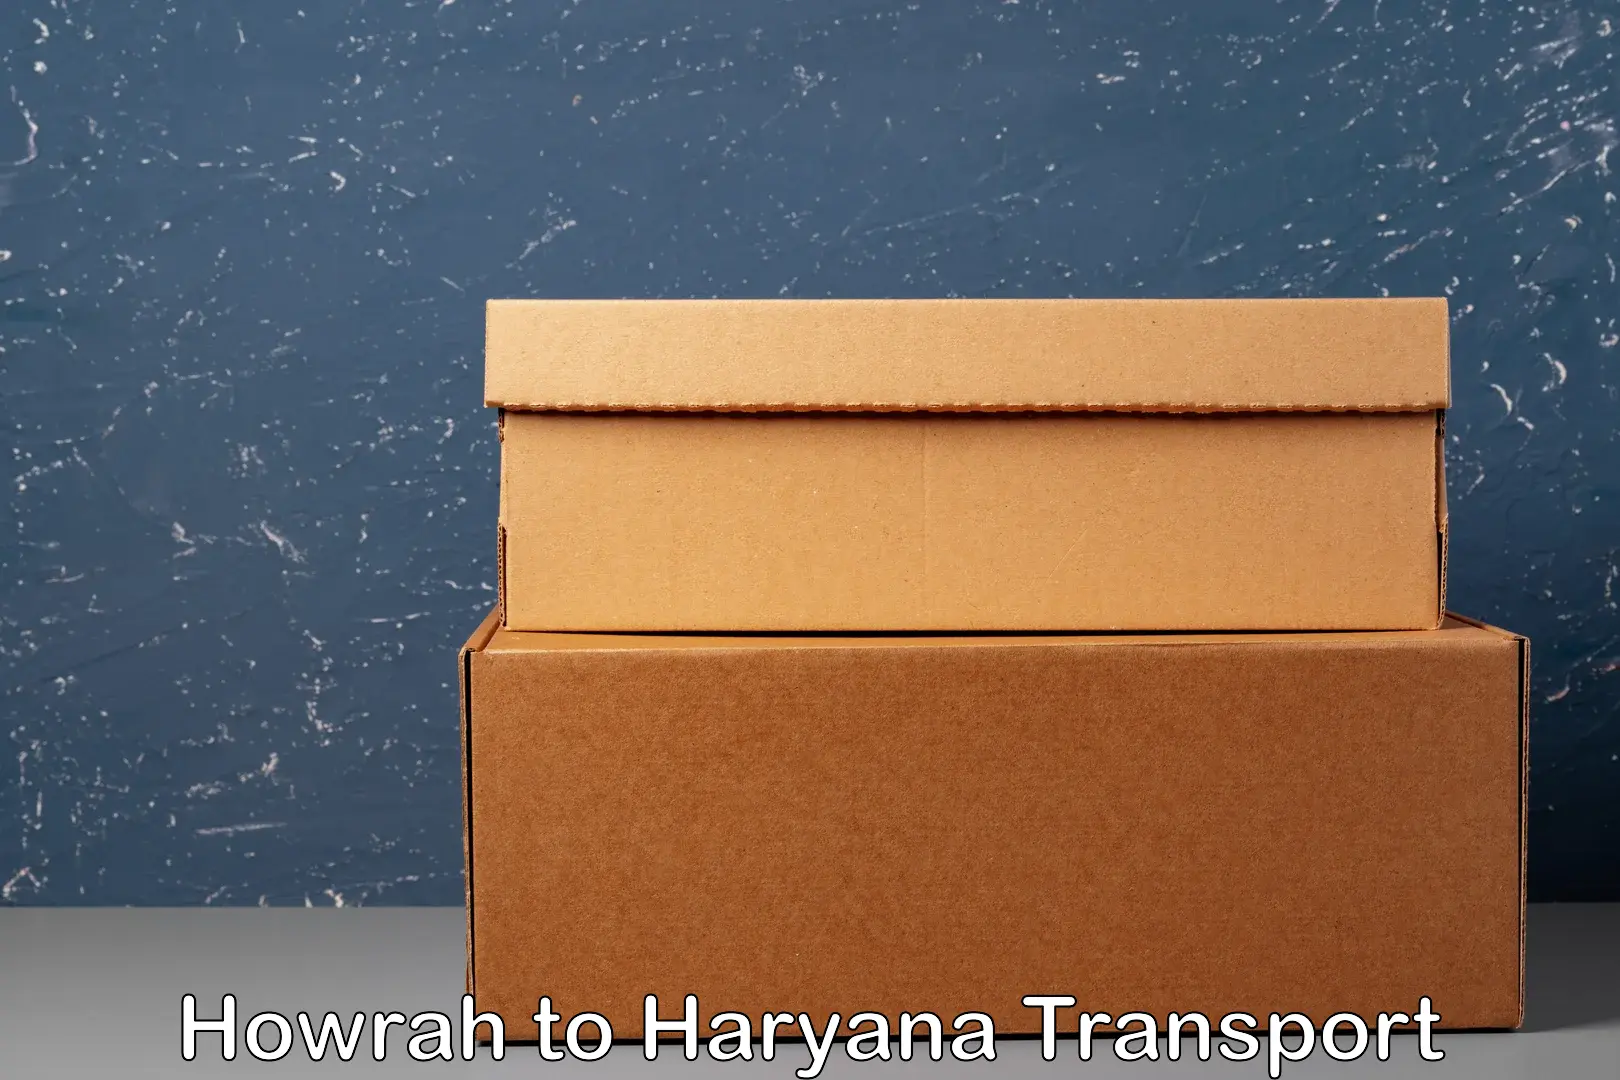 Bike transfer in Howrah to Haryana